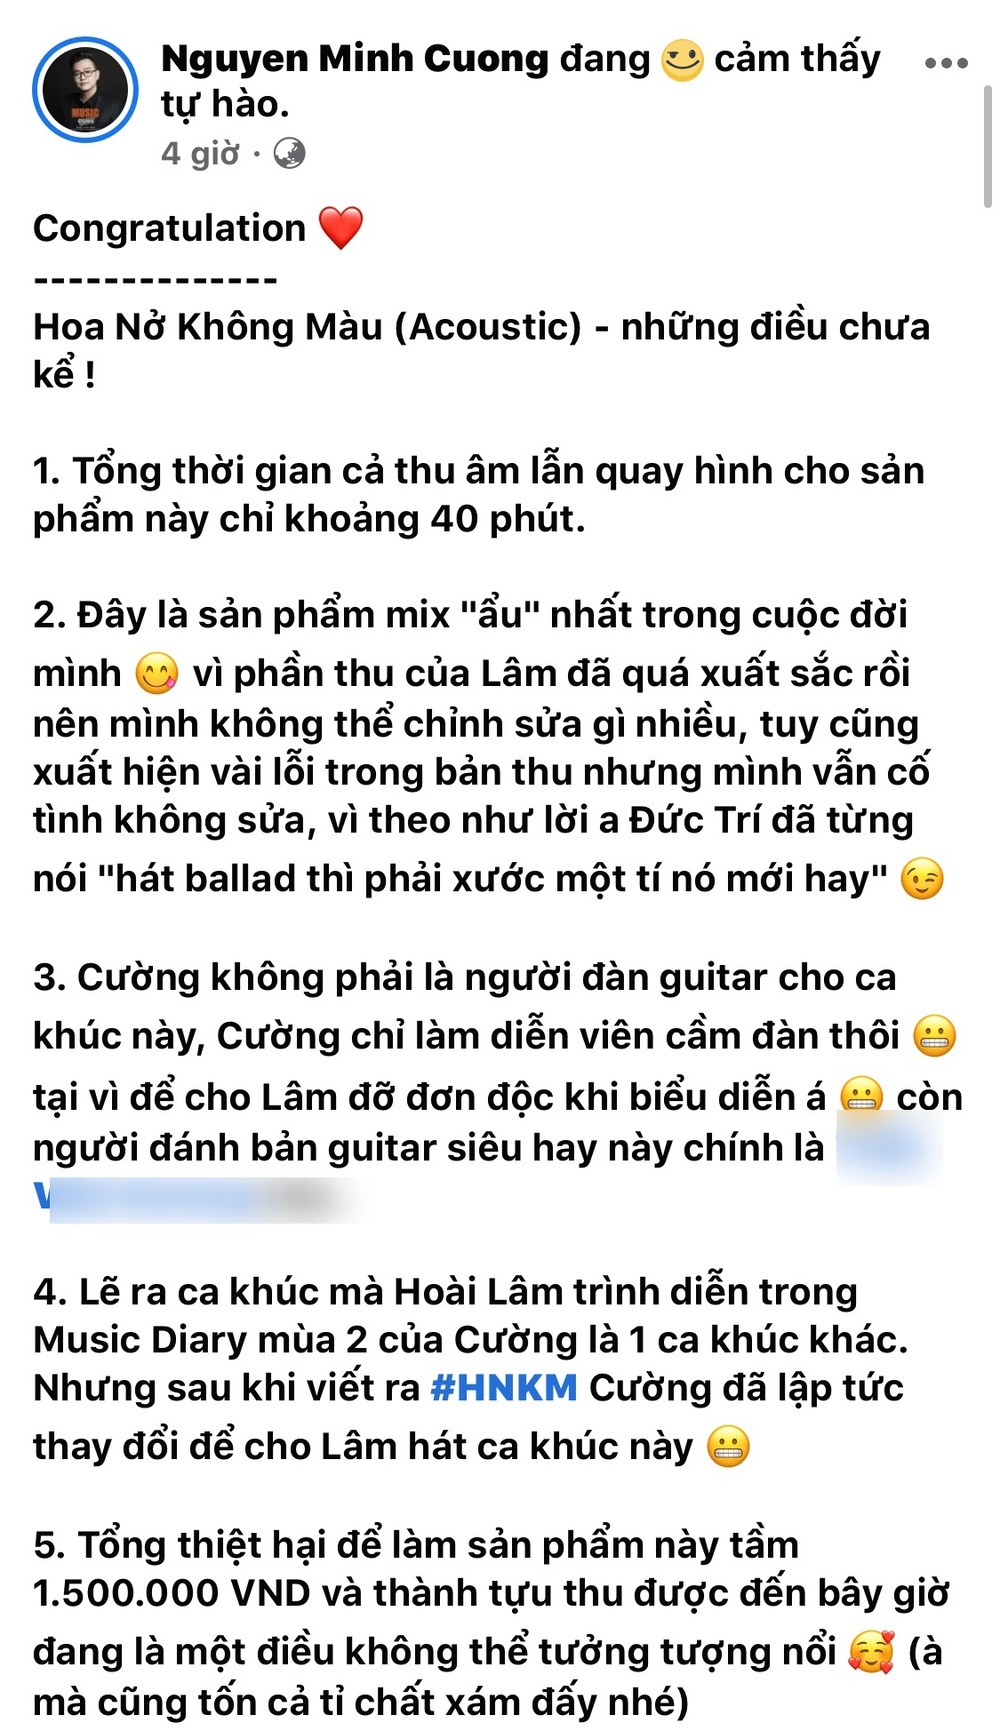  
Nhạc sĩ Nguyễn Minh Chung chia sẻ về MV Hoa nở không màu. Ảnh: Chụp màn hình